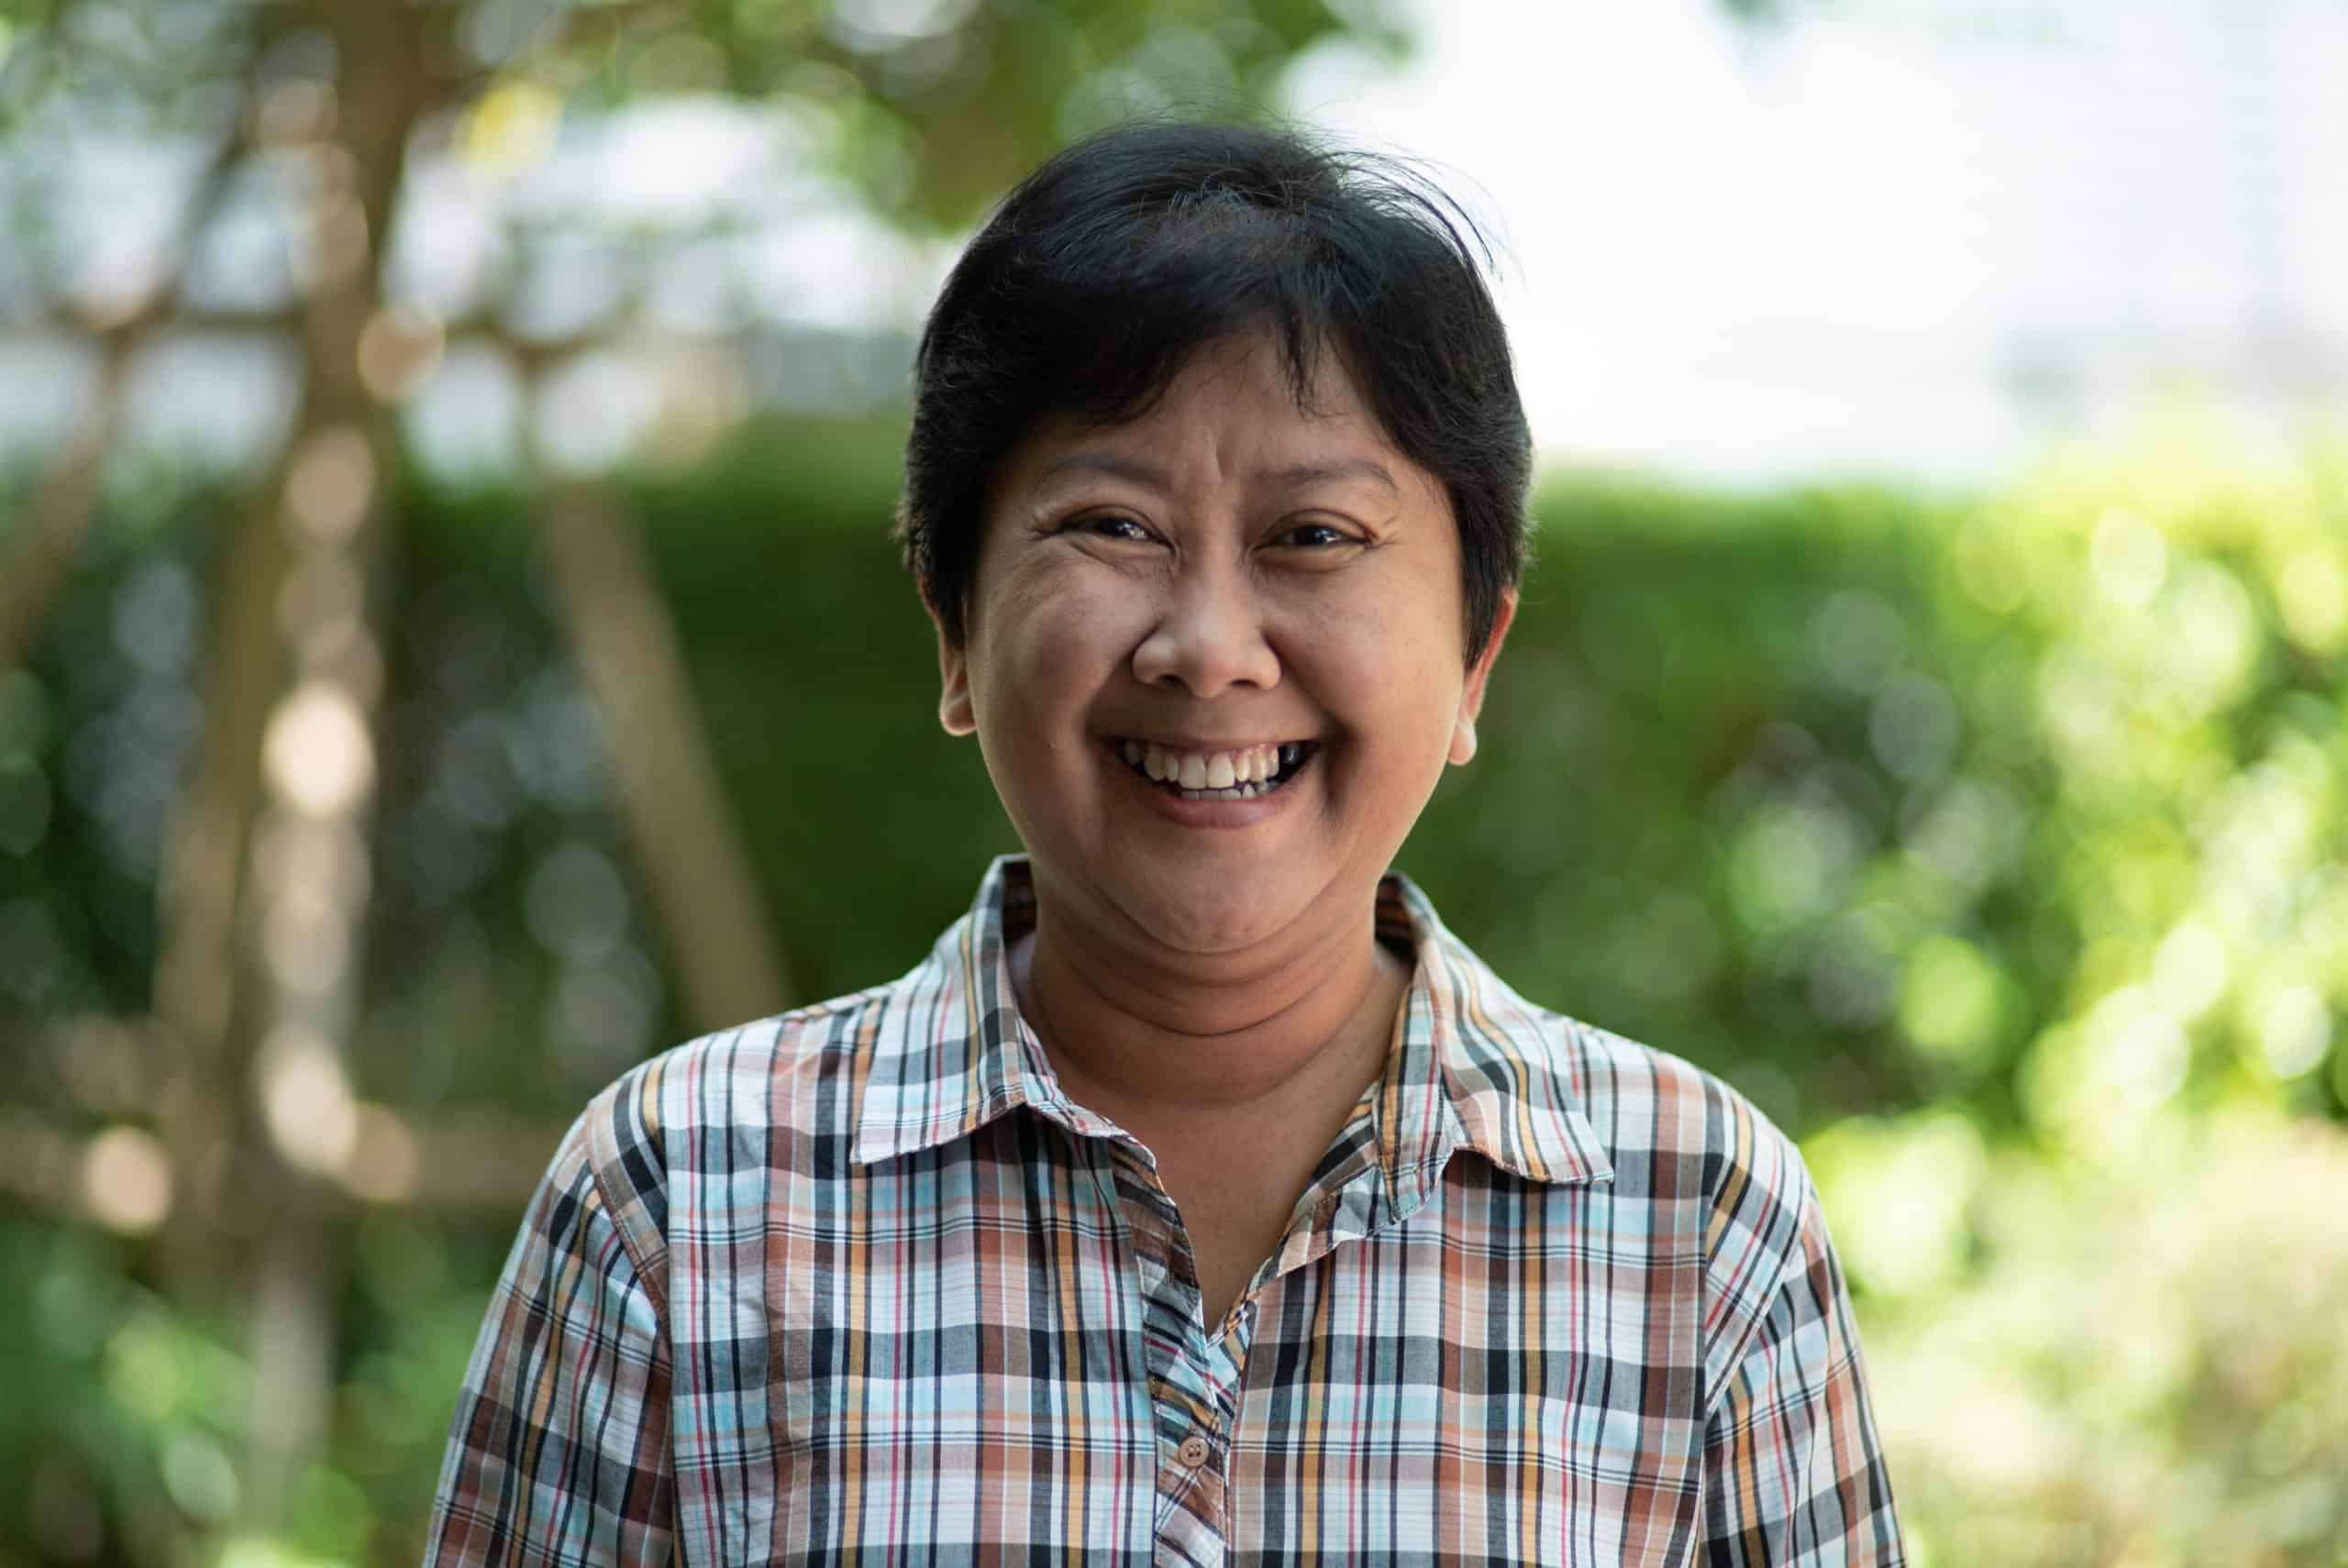 Portrait of Thai activist smiling